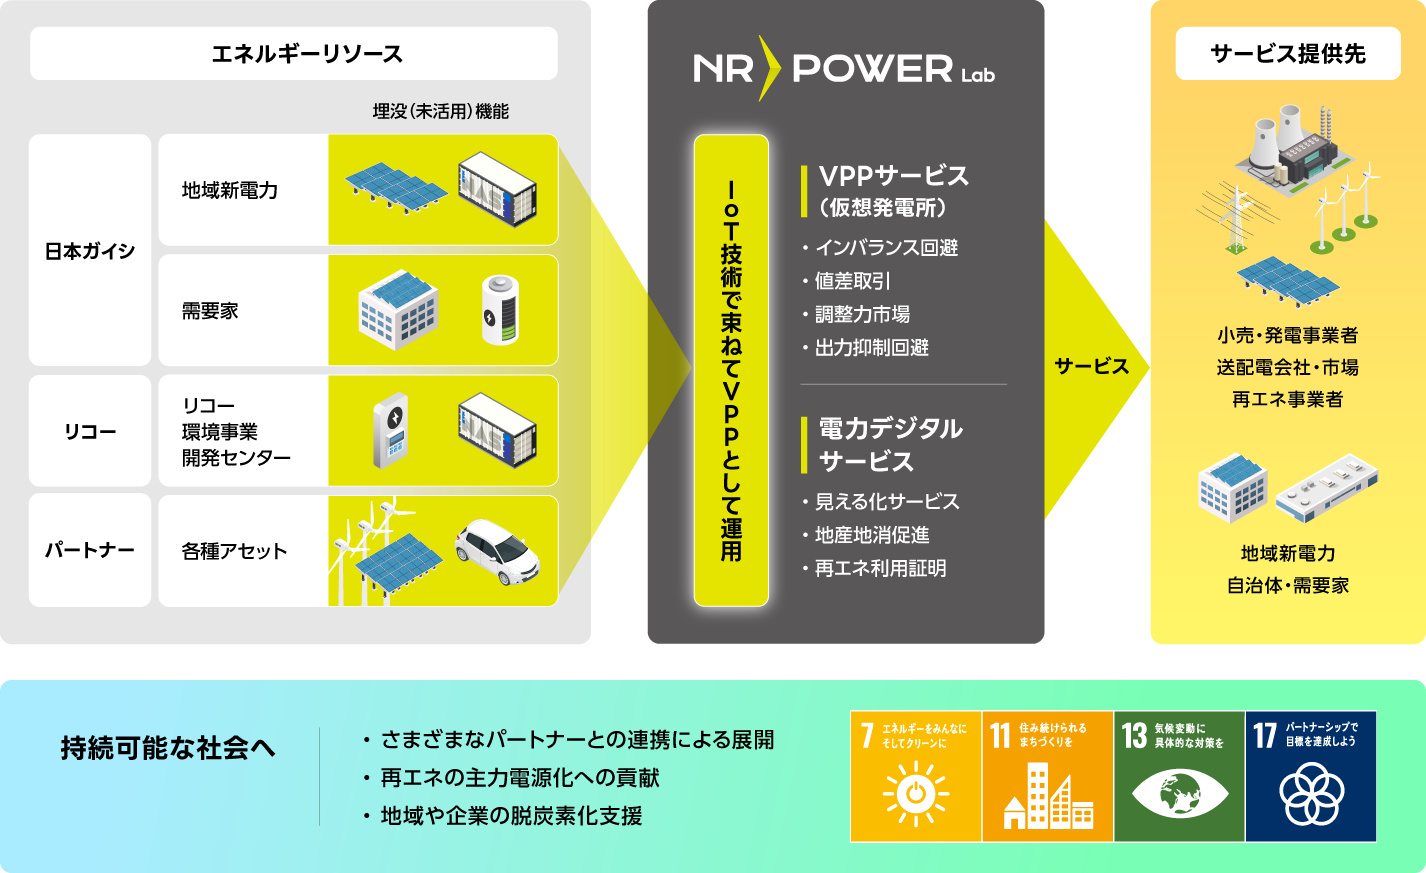 NR-Power Labは、日本ガイシやリコー、パートナーが持つエネルギーリソースを、IoT技術で束ねてVPPとして運用し、様々なサービスを提供します。